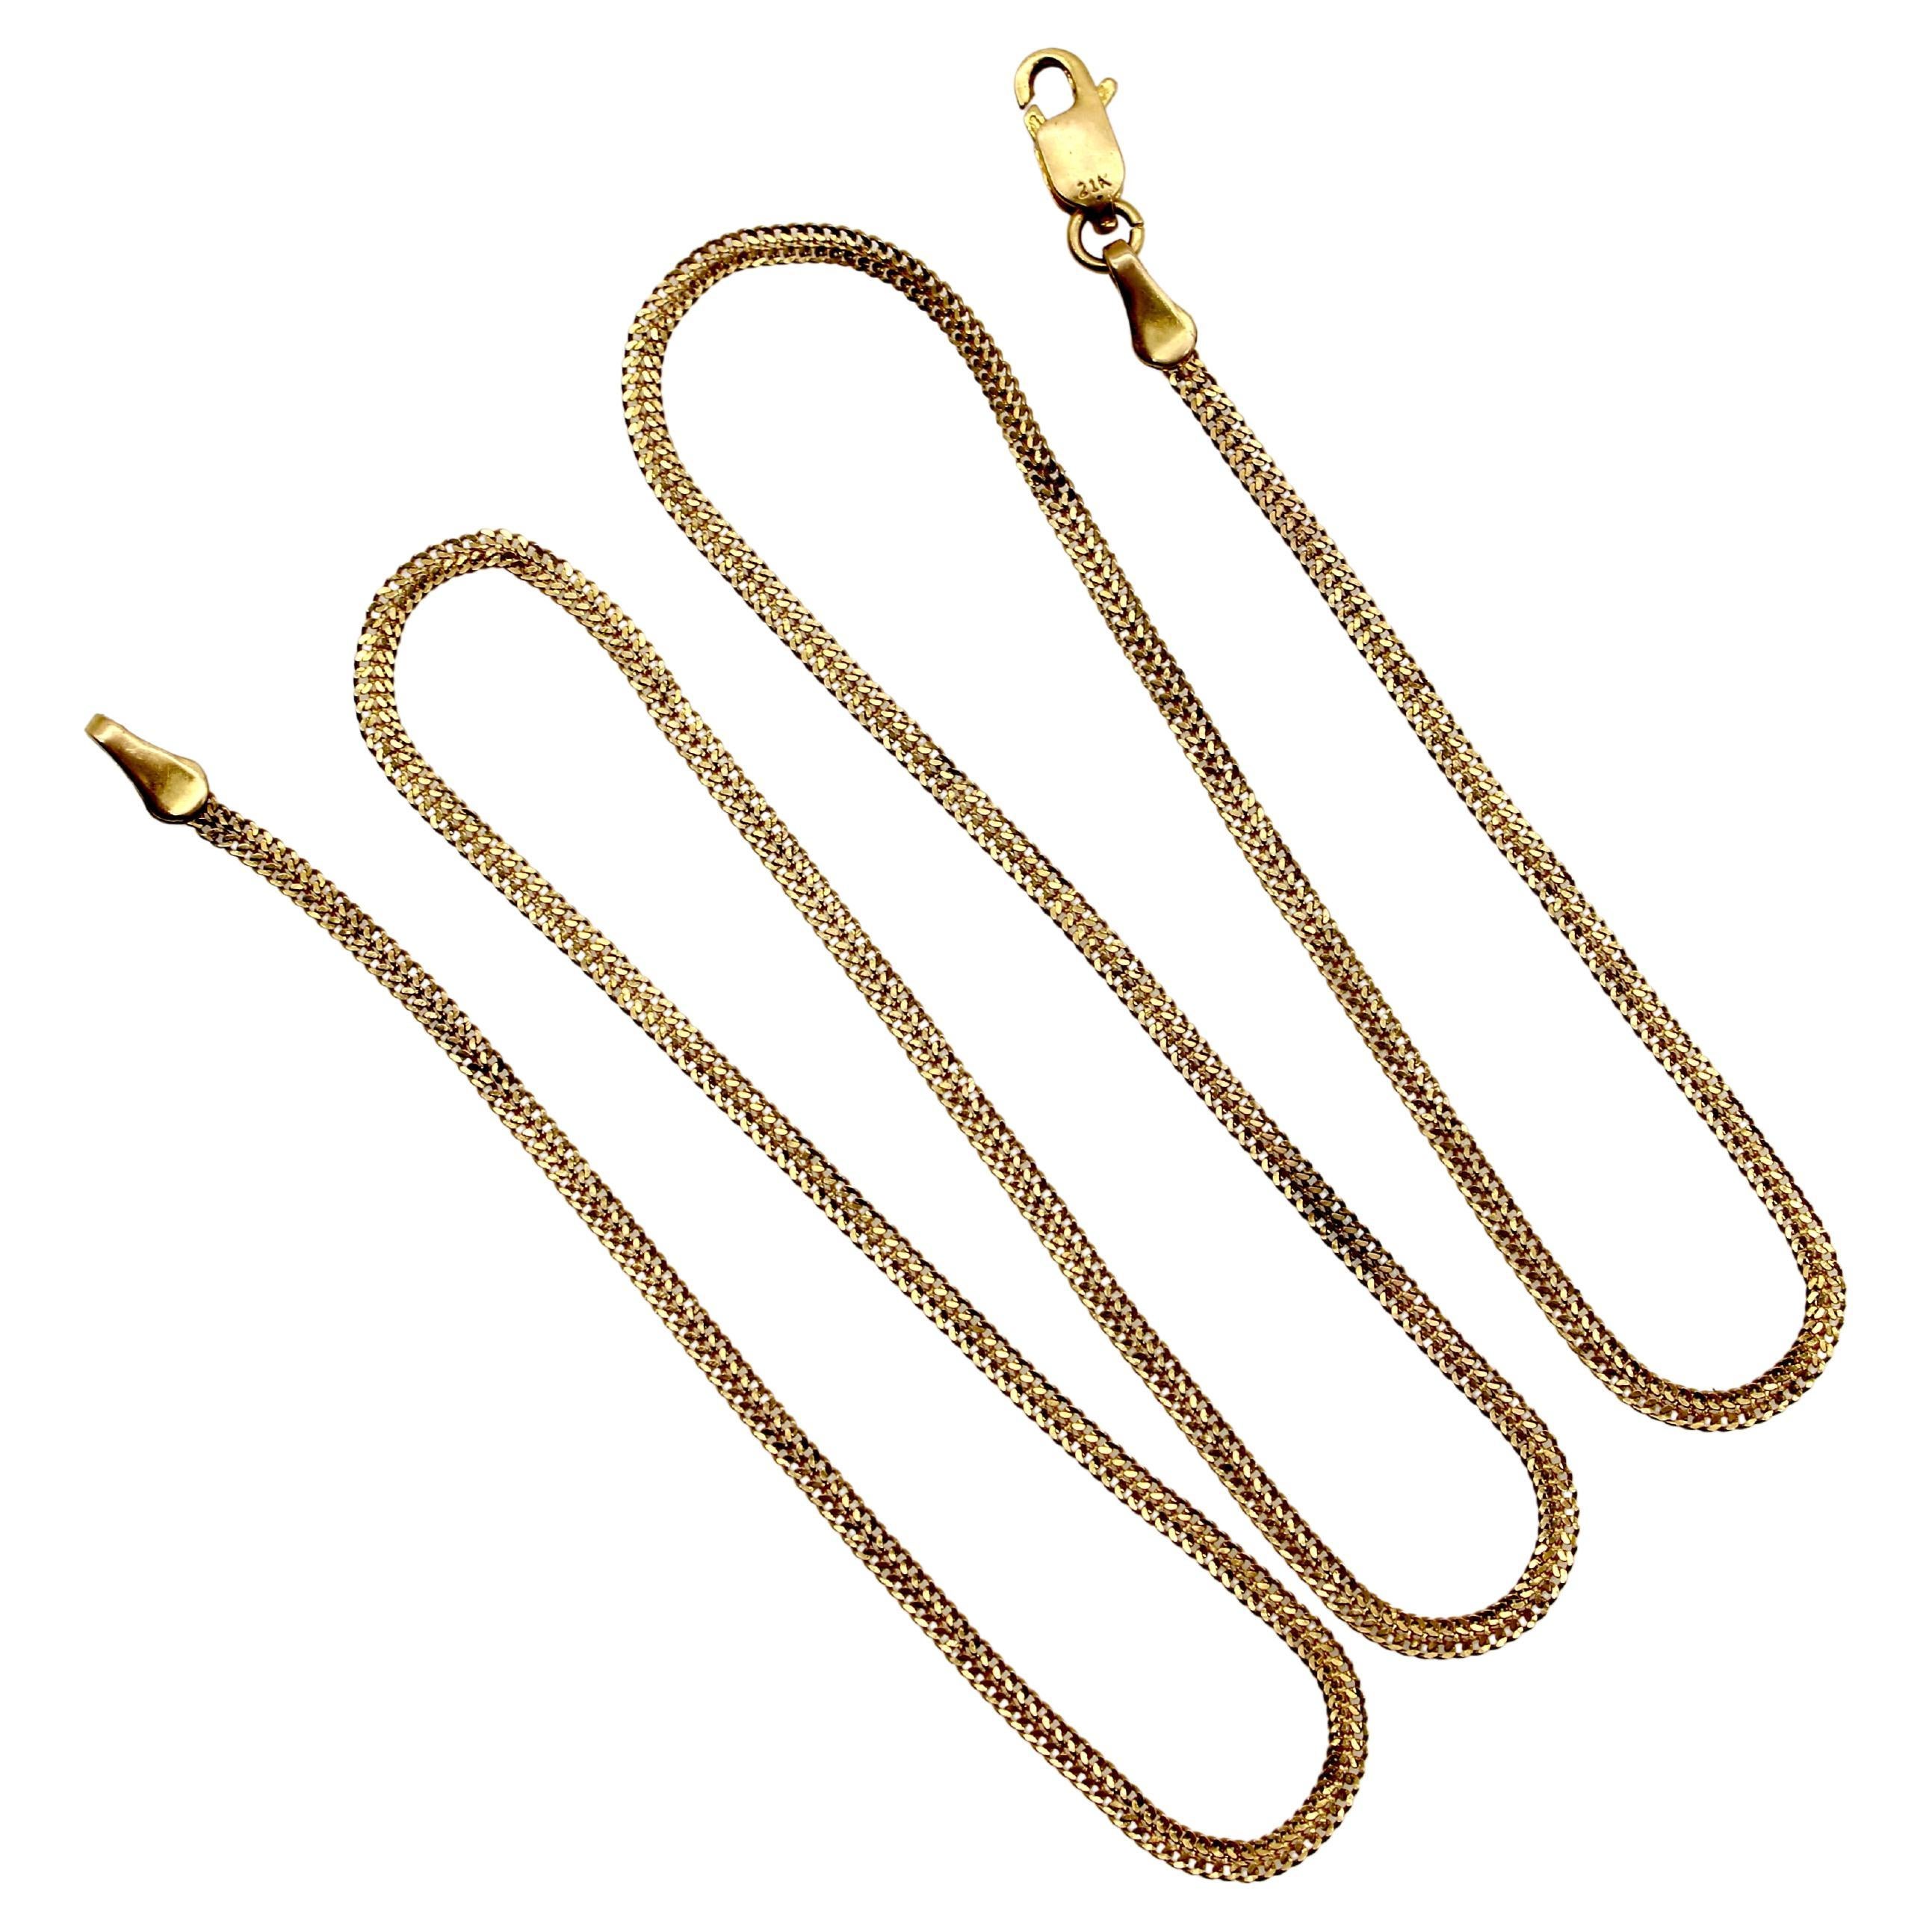 Vintage 21K Gold Delicate Ribbonlike Chain (Chaîne délicate en forme de ruban) 